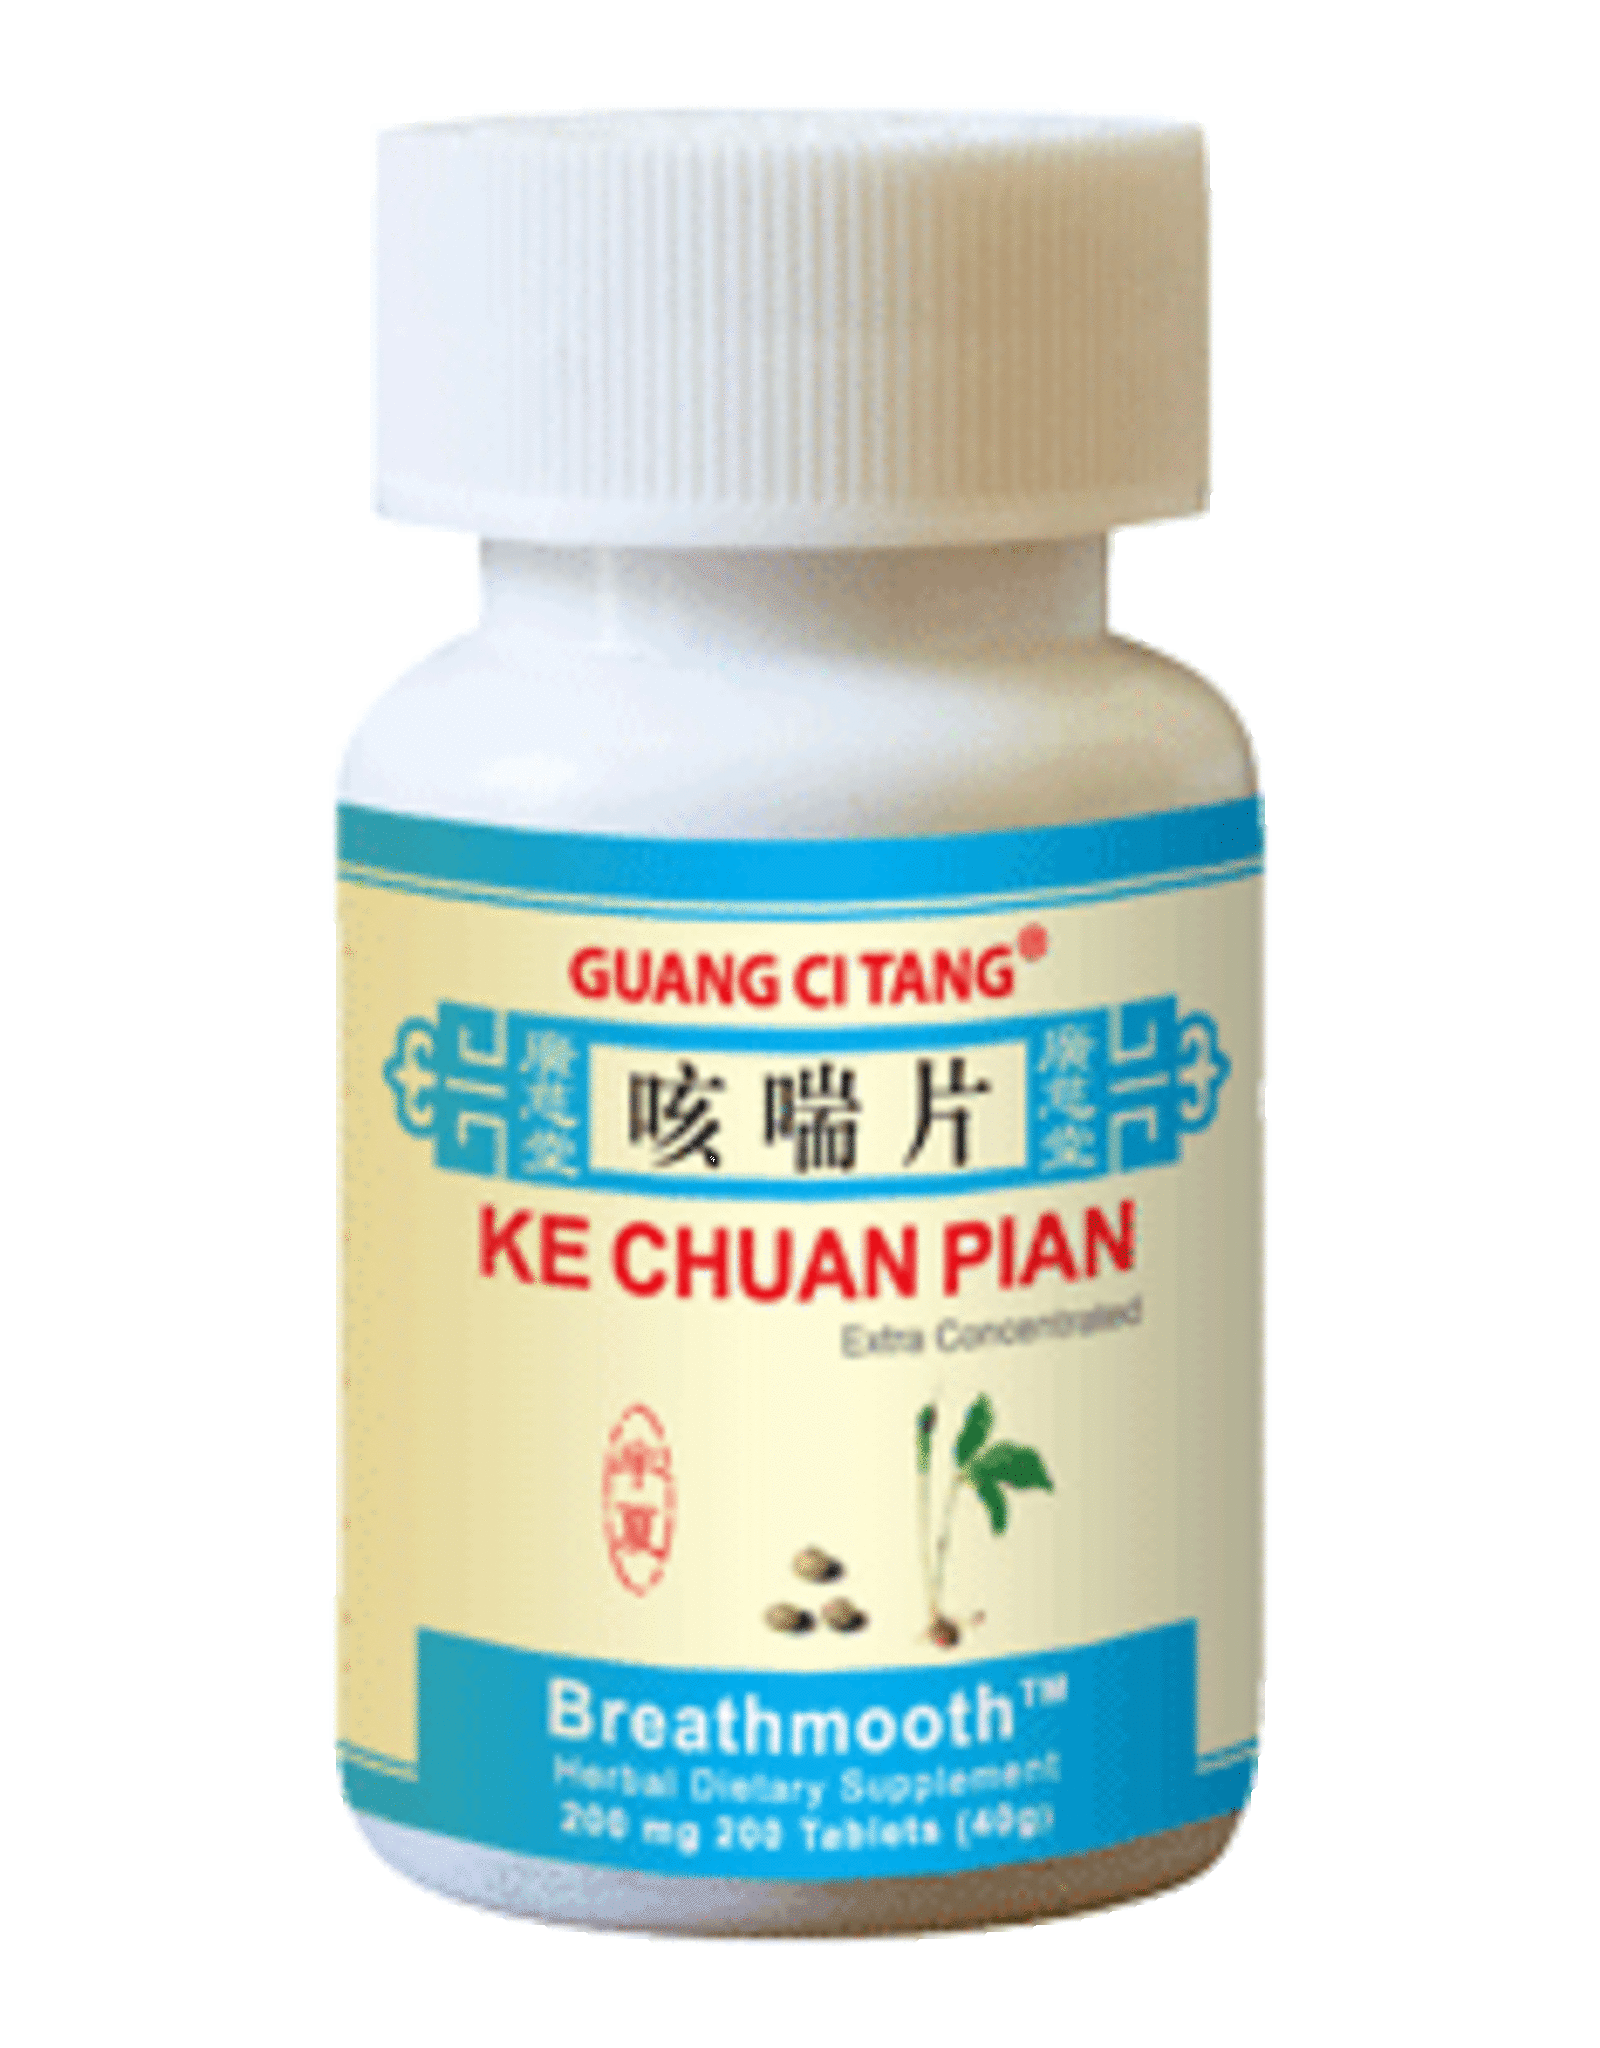 Guang Ci Tang Ke Chuan Pian - Breathmooth